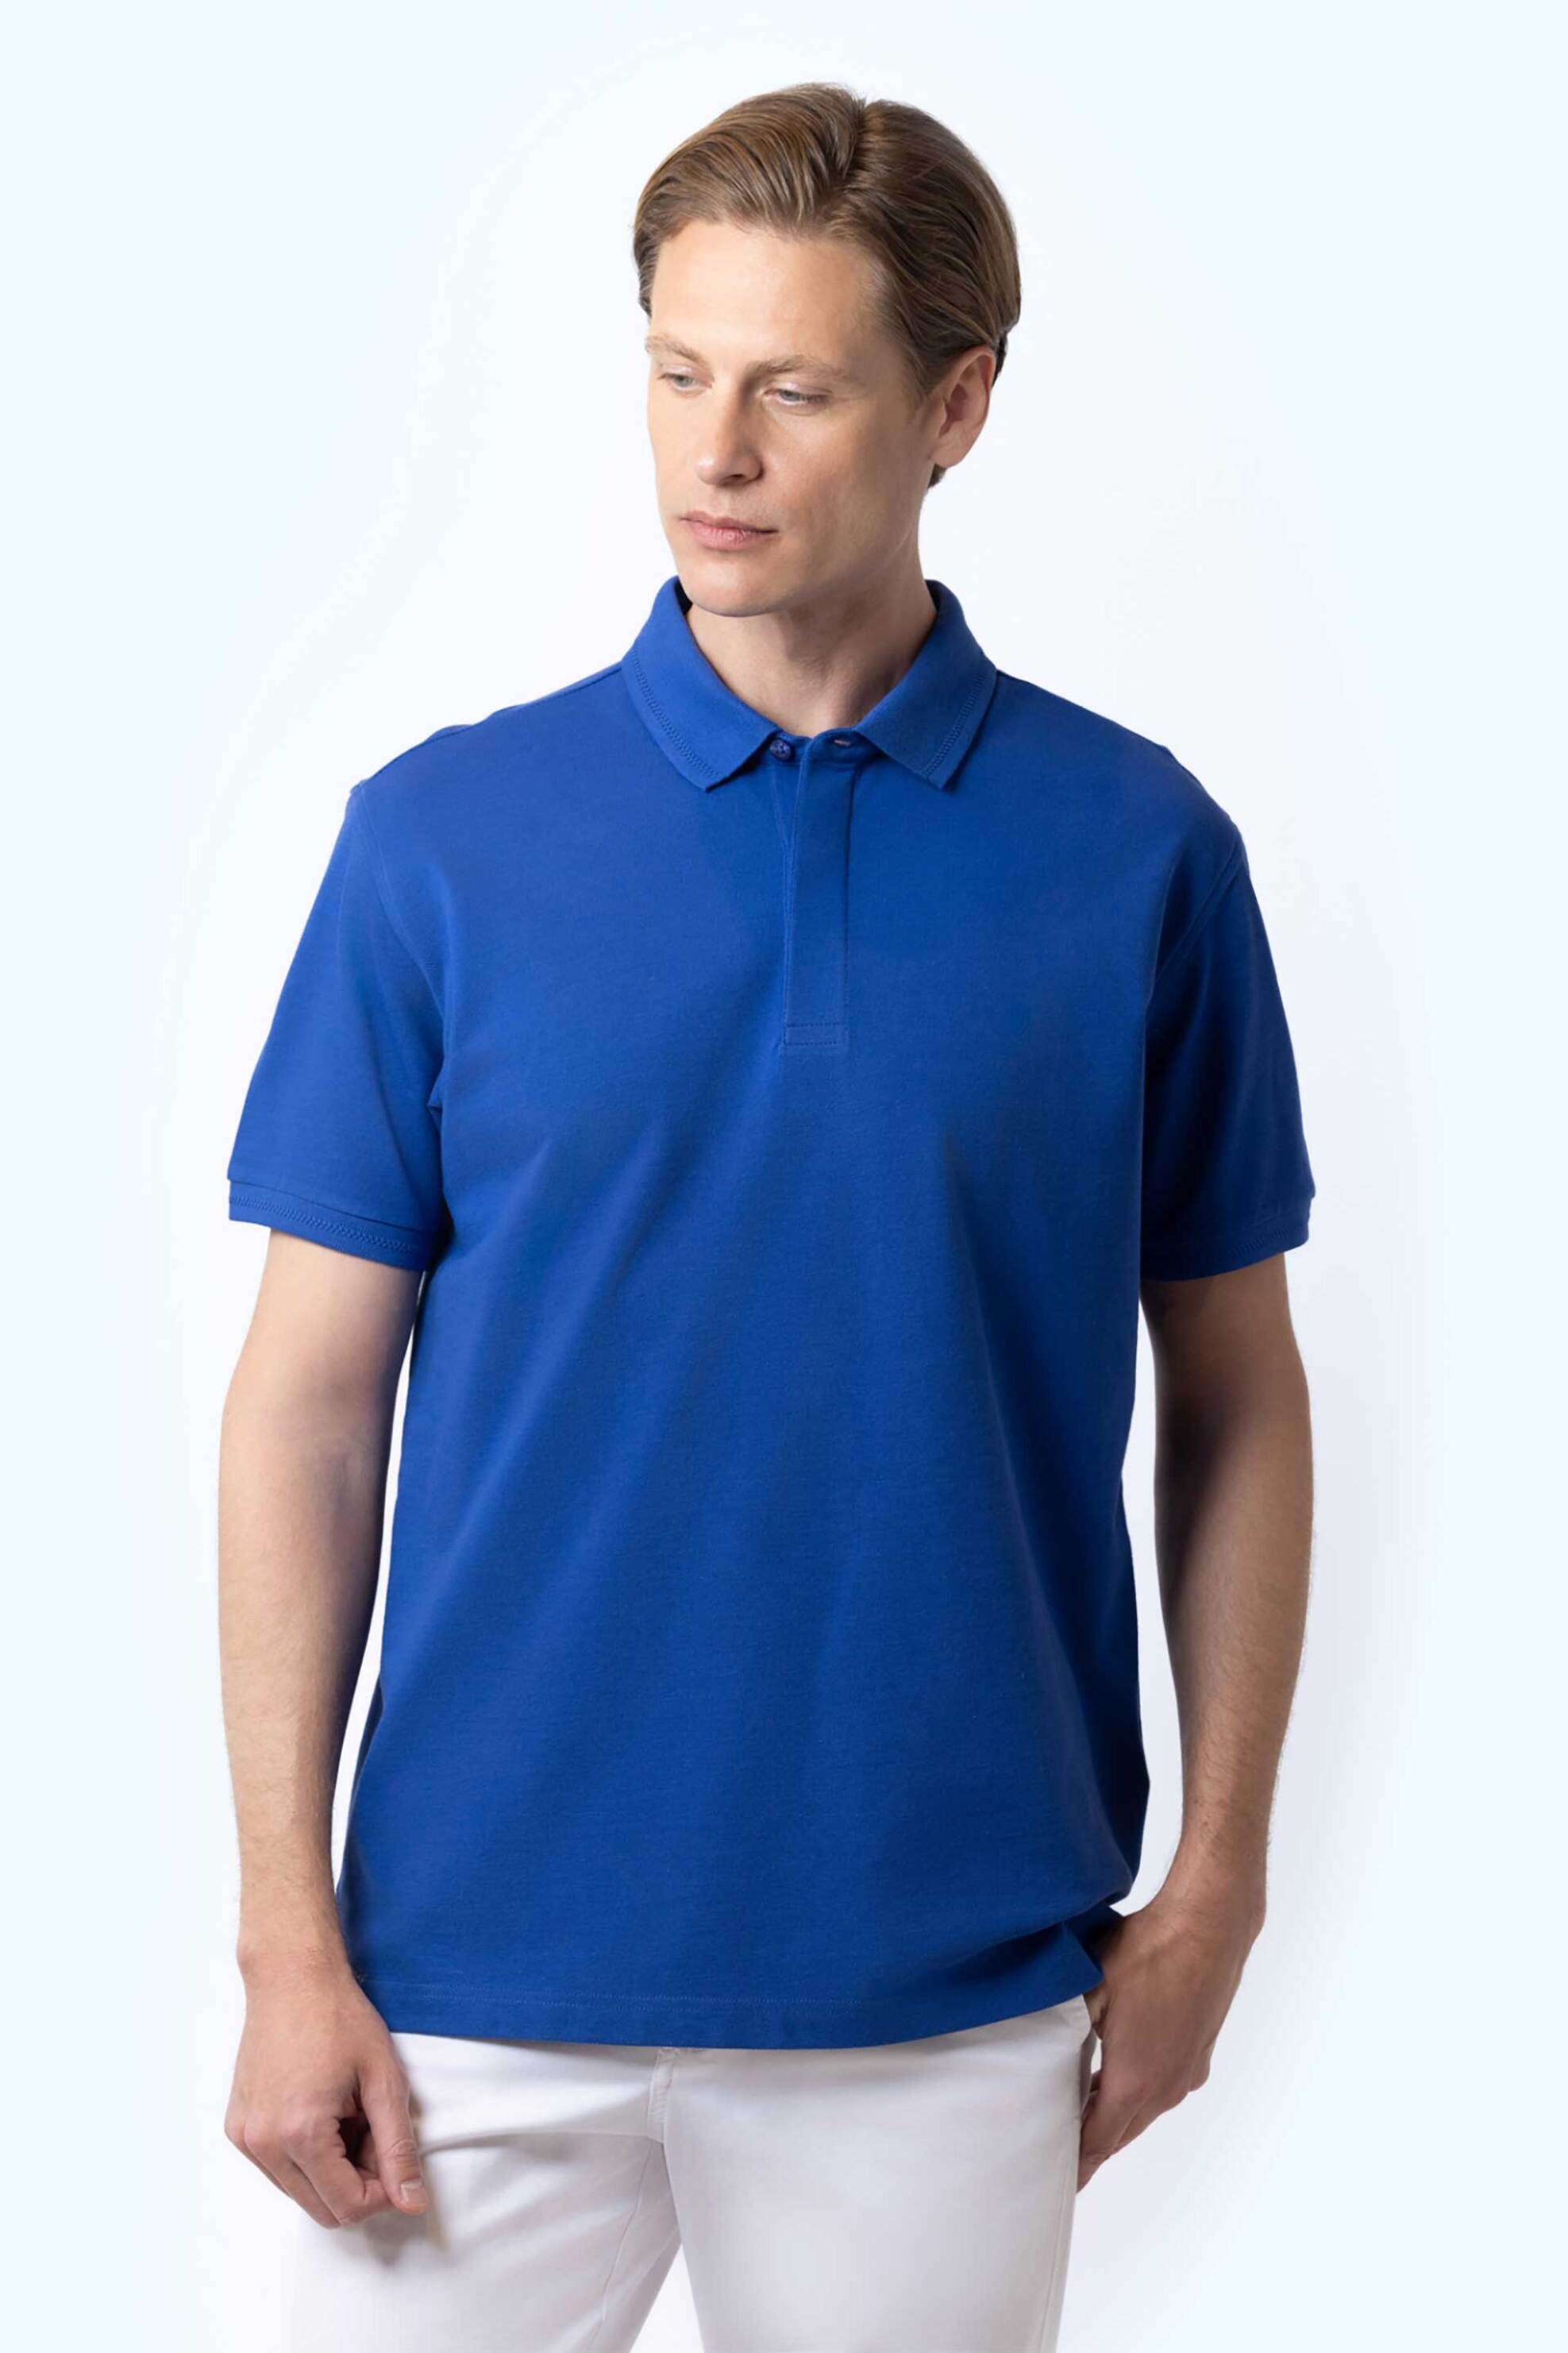 Ανδρική Μόδα > Ανδρικά Ρούχα > Ανδρικές Μπλούζες > Ανδρικές Μπλούζες Πολο The Bostonians ανδρική πόλο μπλούζα πικέ με κεντημένο λογότυπο Regular Fit Μπλε